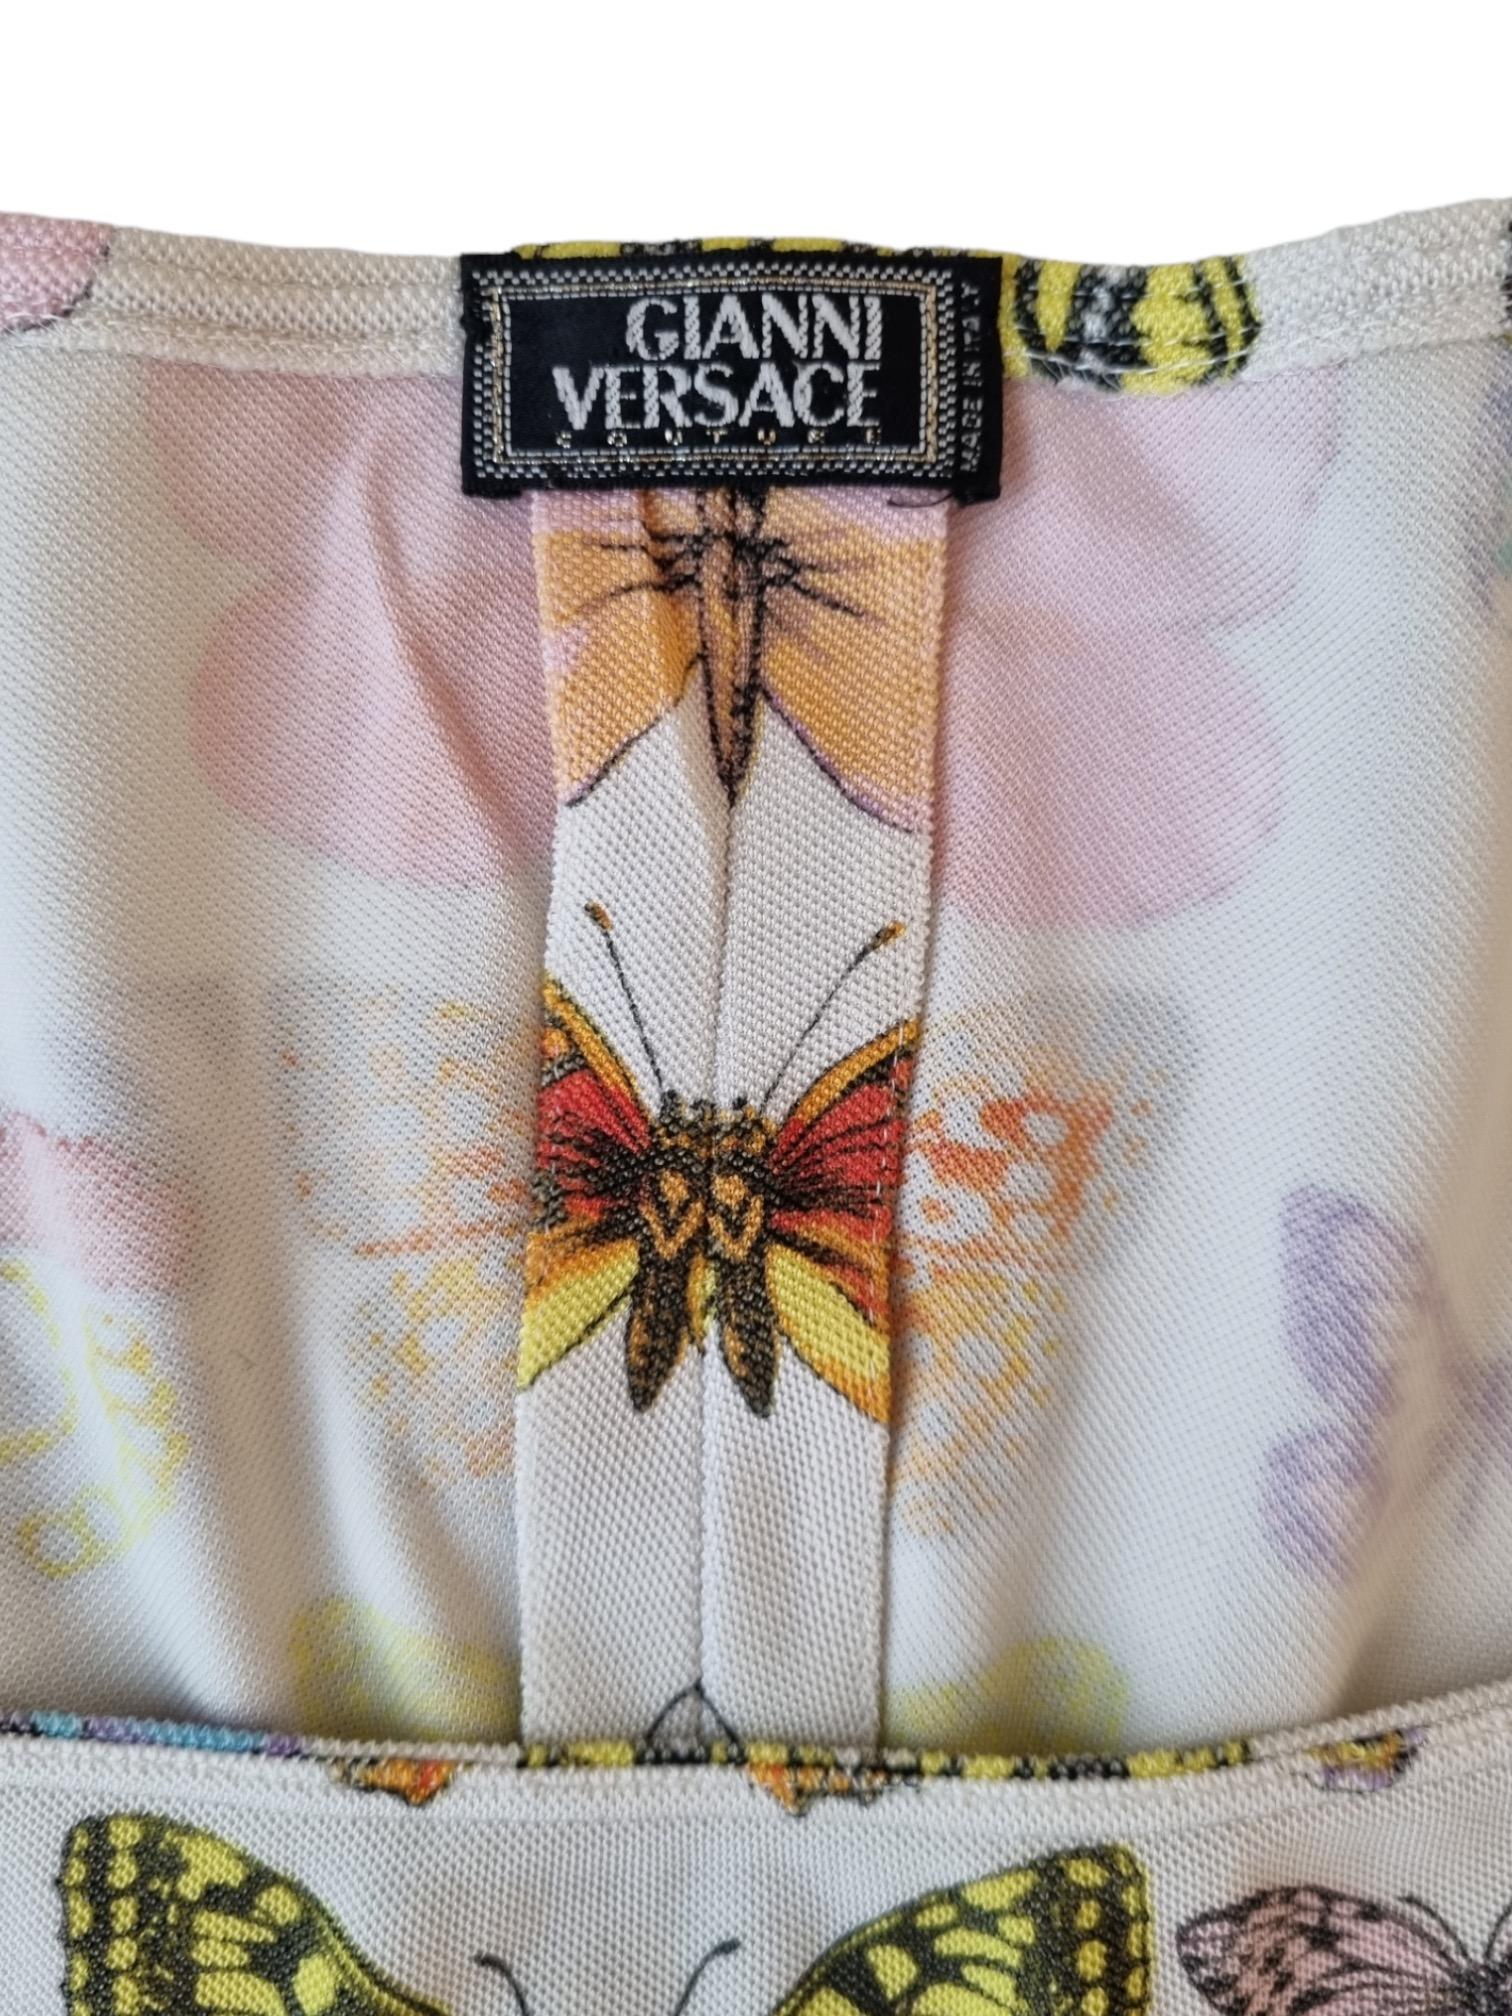 Ikonisches und sehr seltenes Kleid mit einem der kultigsten Prints von Versace überhaupt - dem Schmetterlingsprint. Dieses Kleid mit weißem Schmetterlingsprint wurde auf dem Laufsteg bei der S/S 1995 Show von Versace getragen. Der Druck wurde